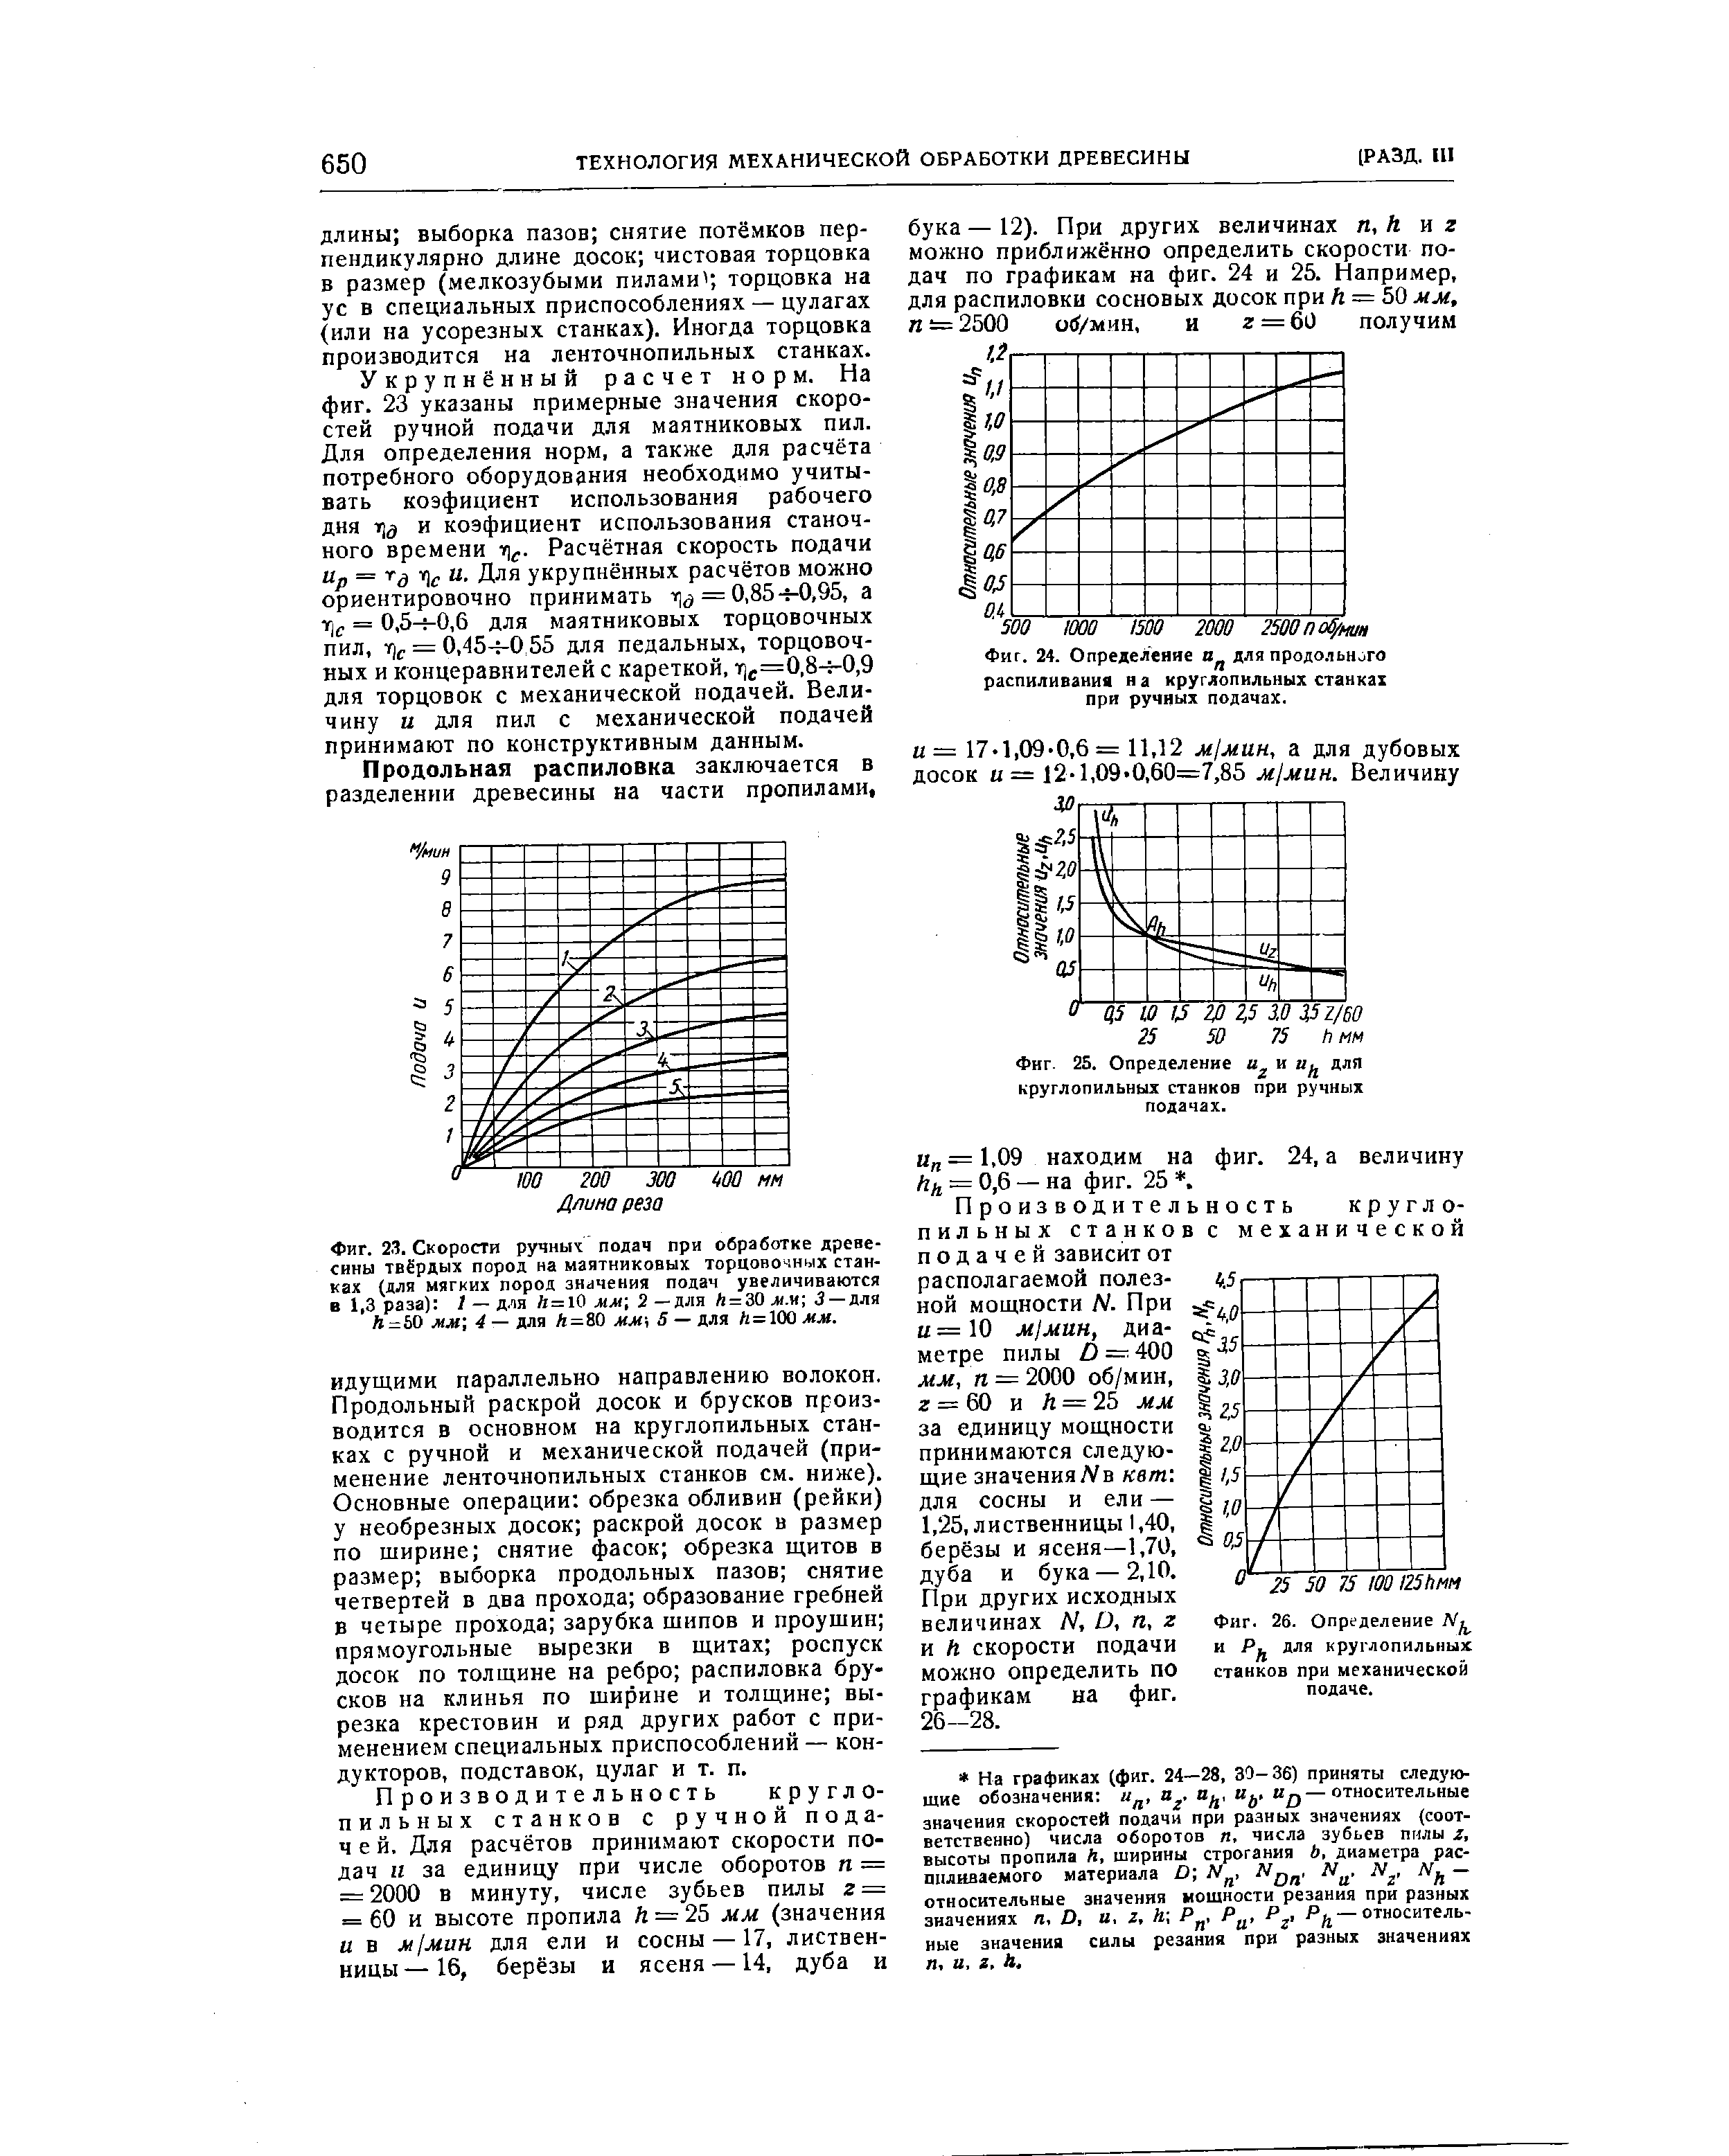 Фиг. 26. Определение и для круглопильных станков при механической подаче.
